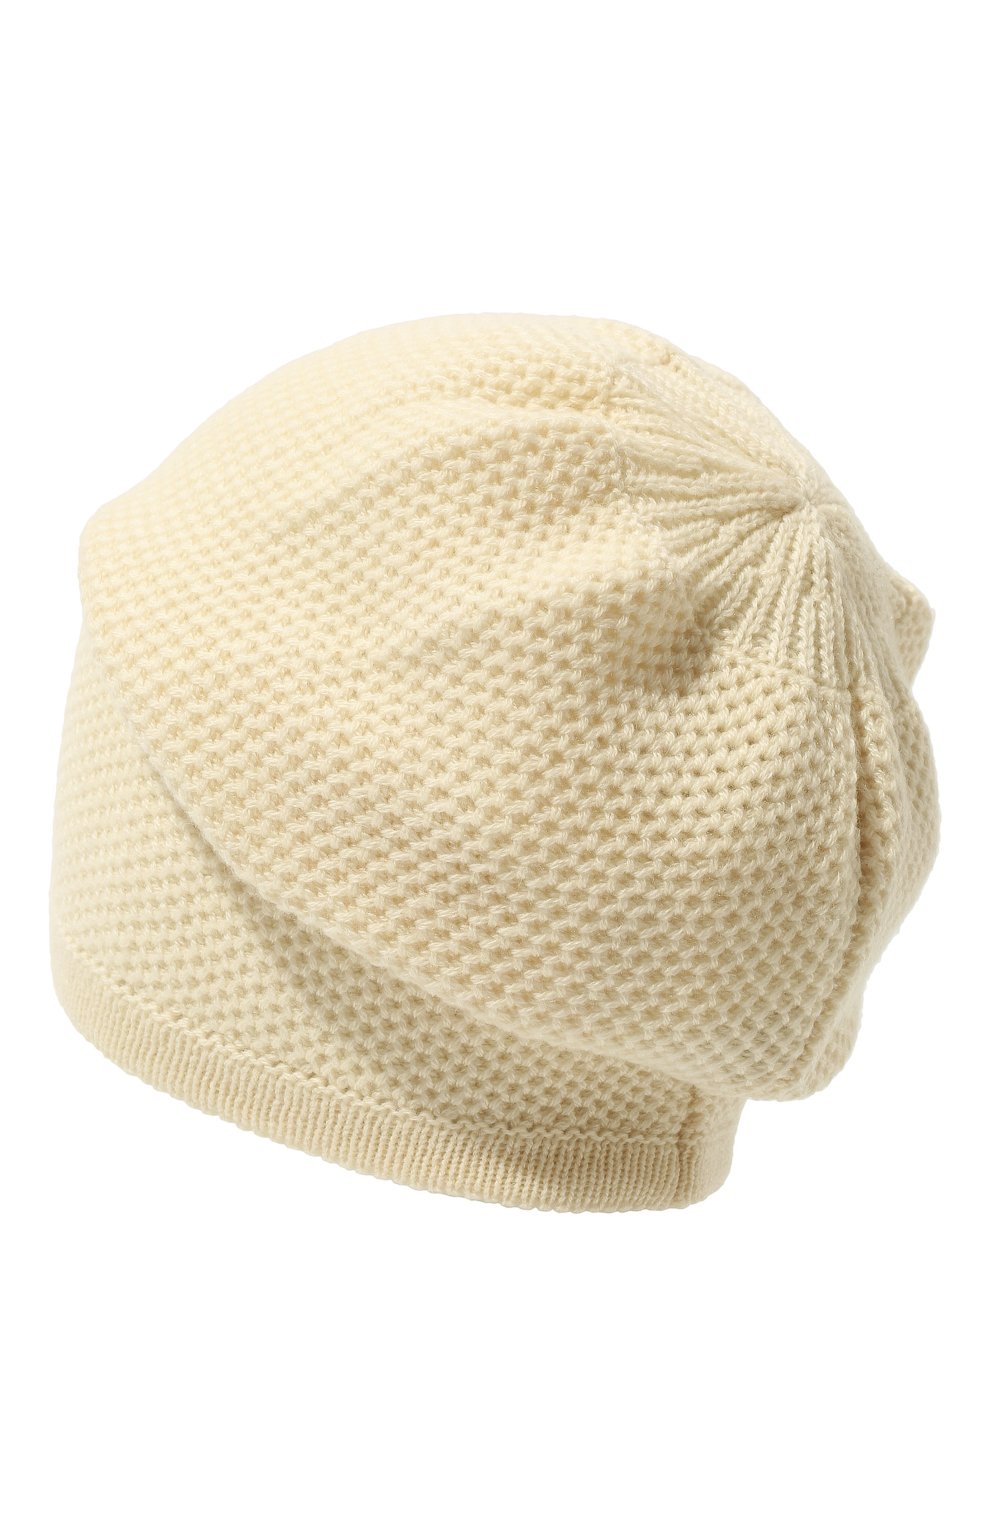 Женская кашемировая шапка INVERNI белого цвета, арт. 5263 CM | Фото 3 (Материал: Текстиль, Кашемир, Шерсть)